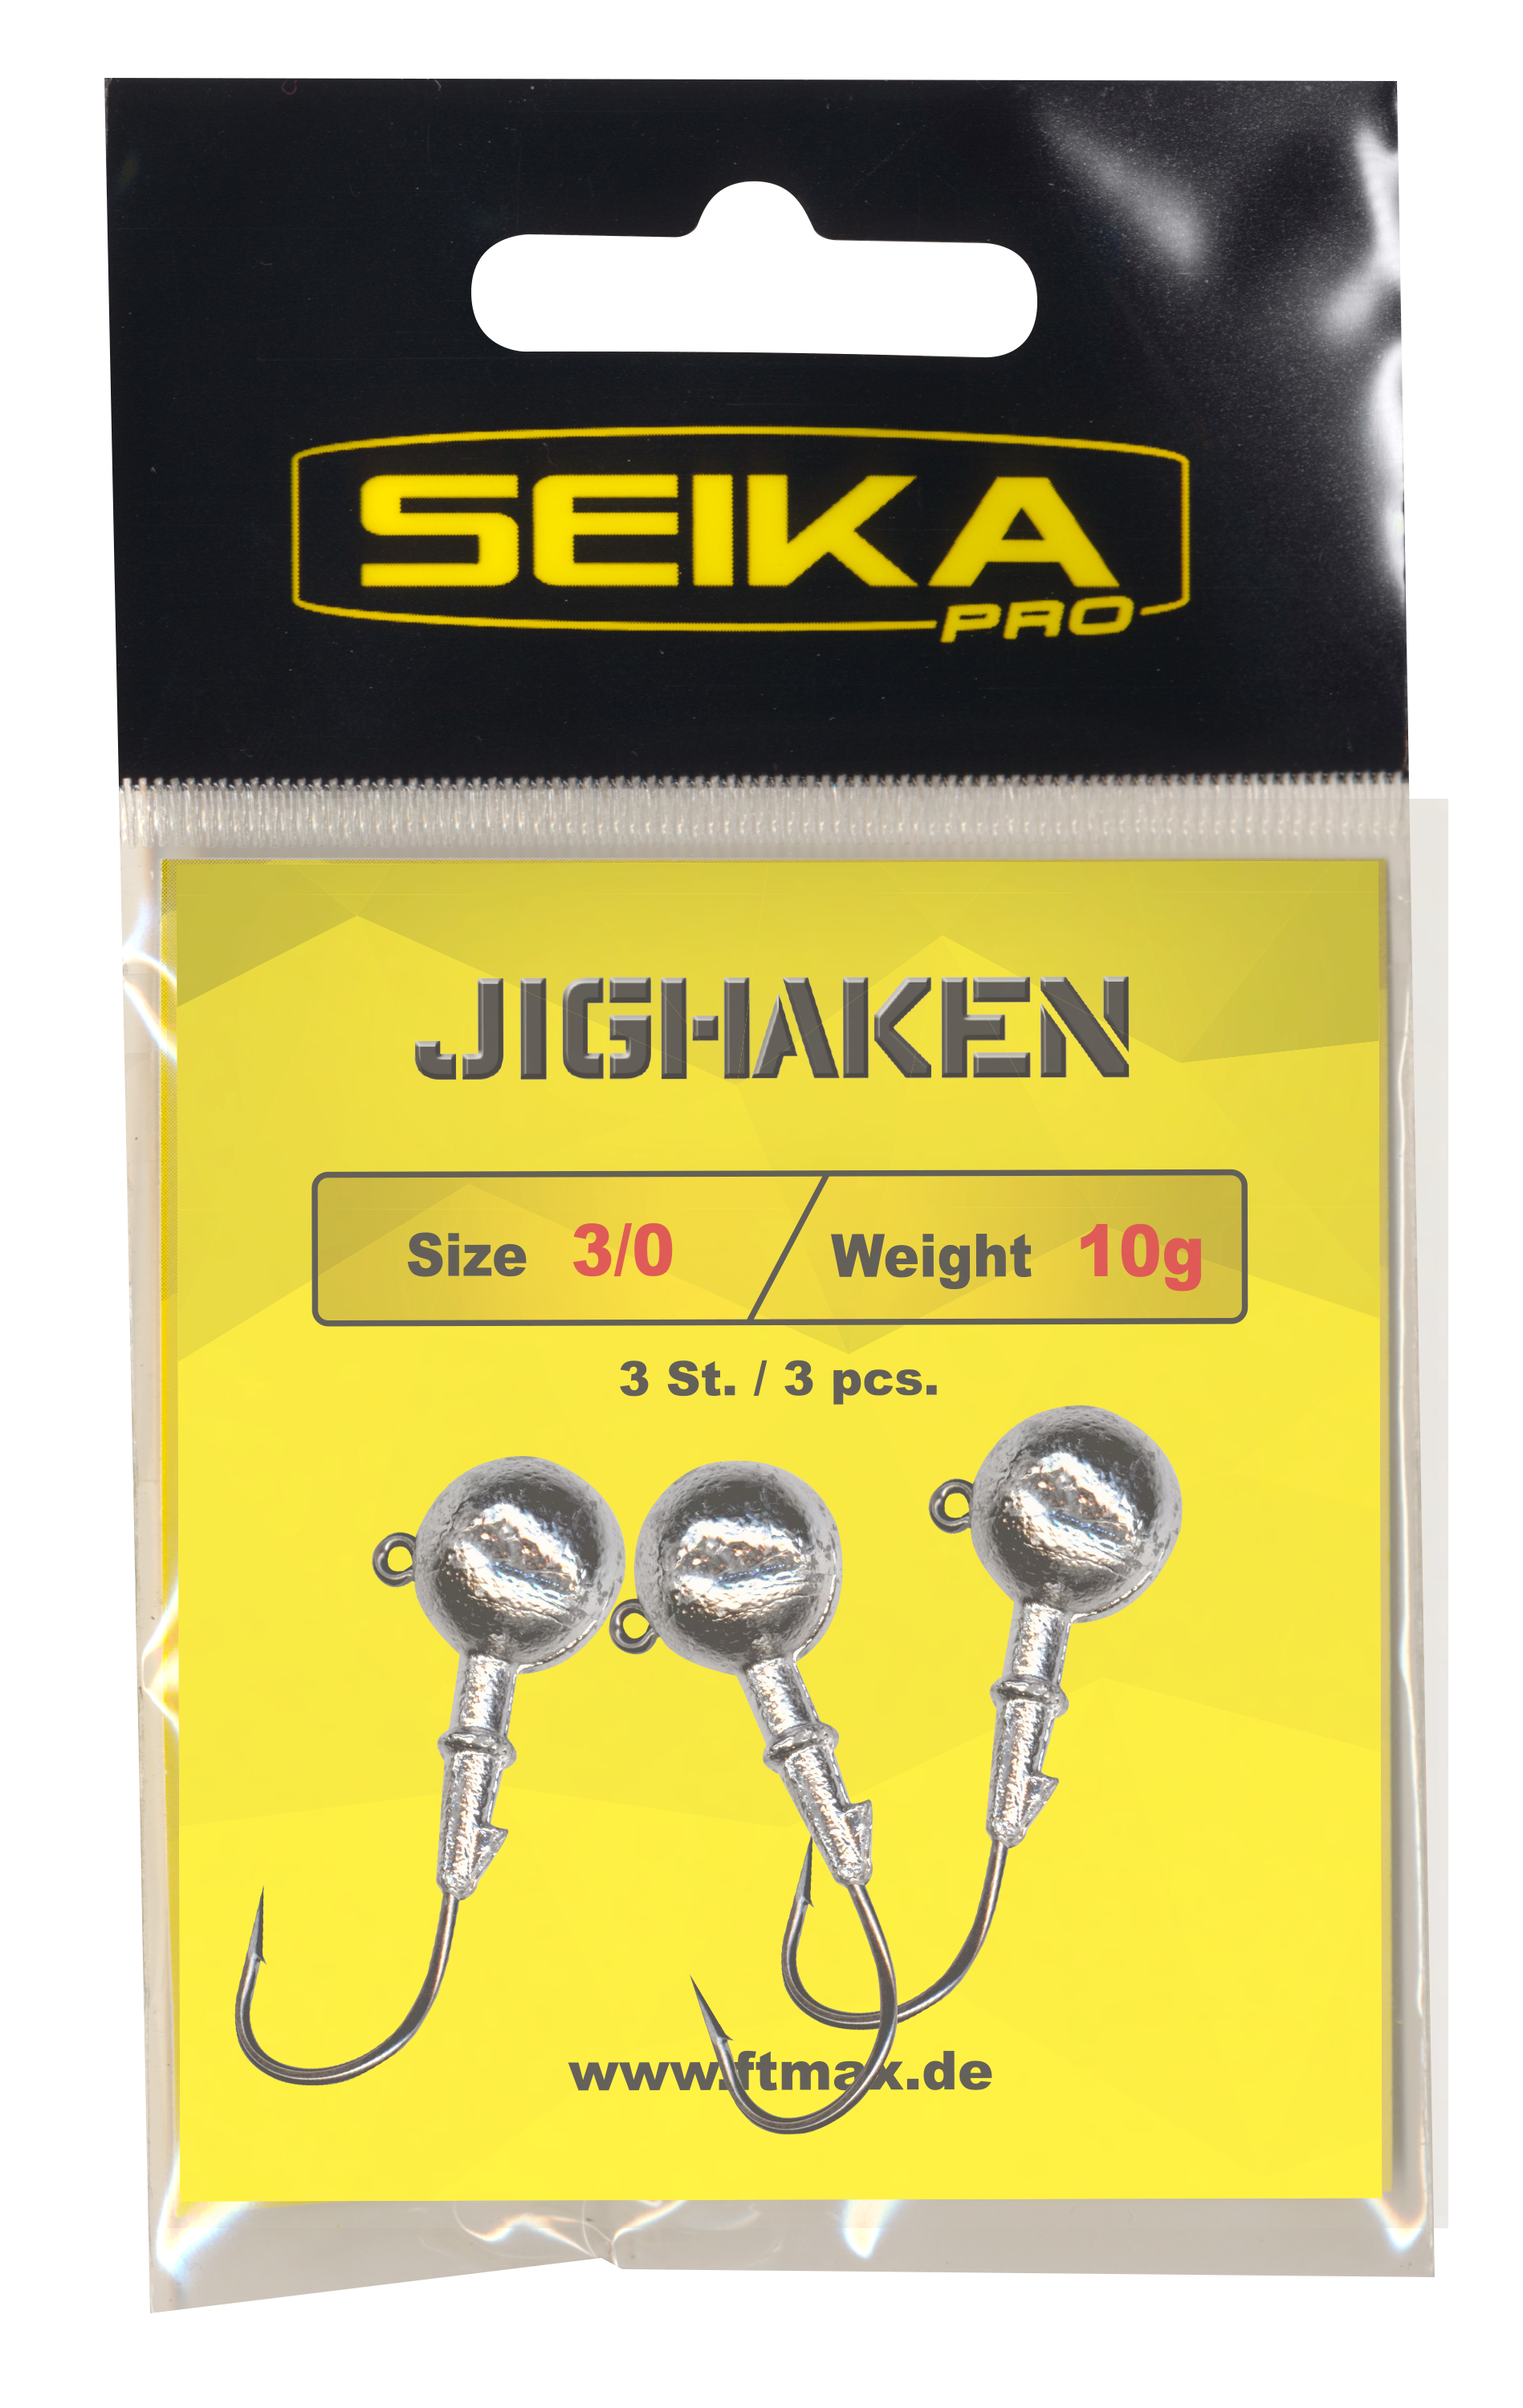 fishing-tackle-max-Seika-pro-9002310_-_00_Jighaken_verpackt